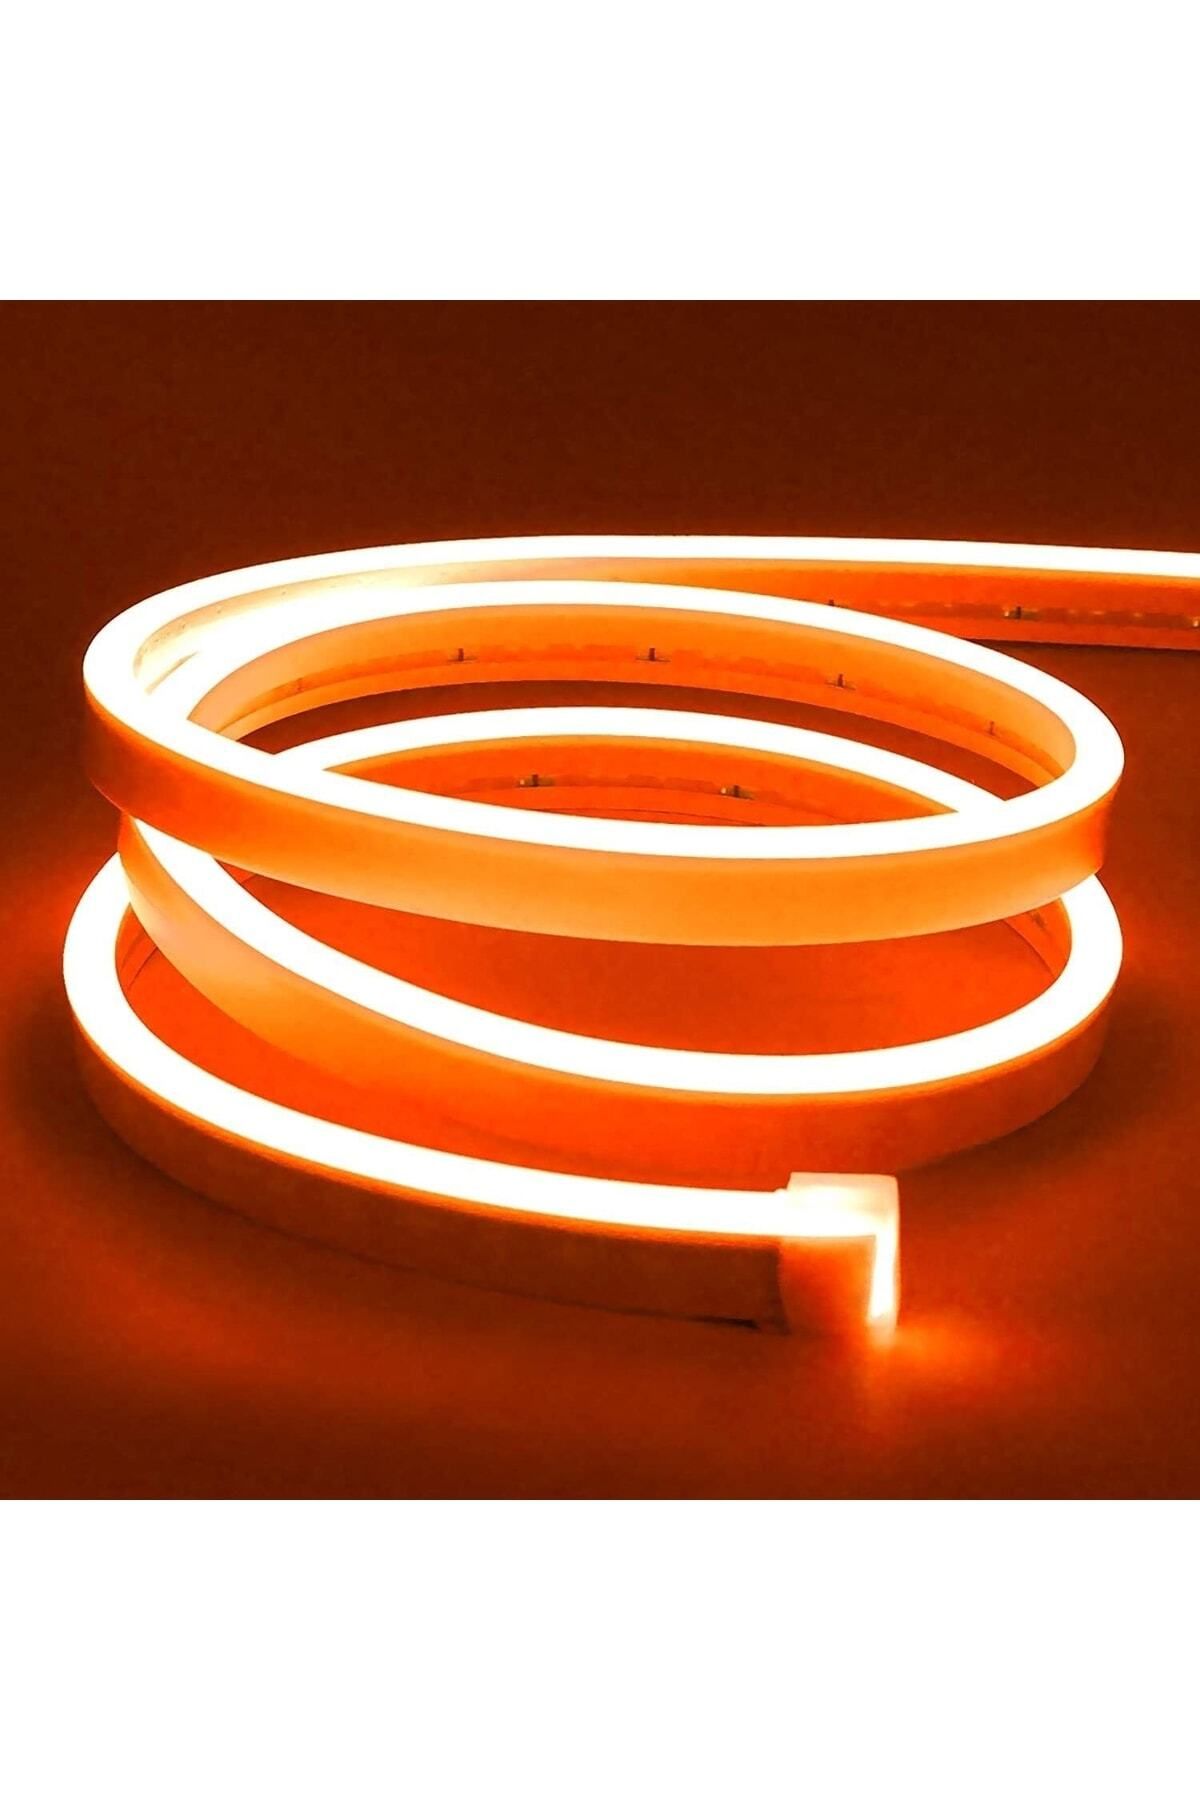 Ema Dükkan 12 Volt 3 Metre Turuncu Neon Led Işık Prize Takılmaya Hazır Değil Neon Şerit Led Esnek Silikonlu